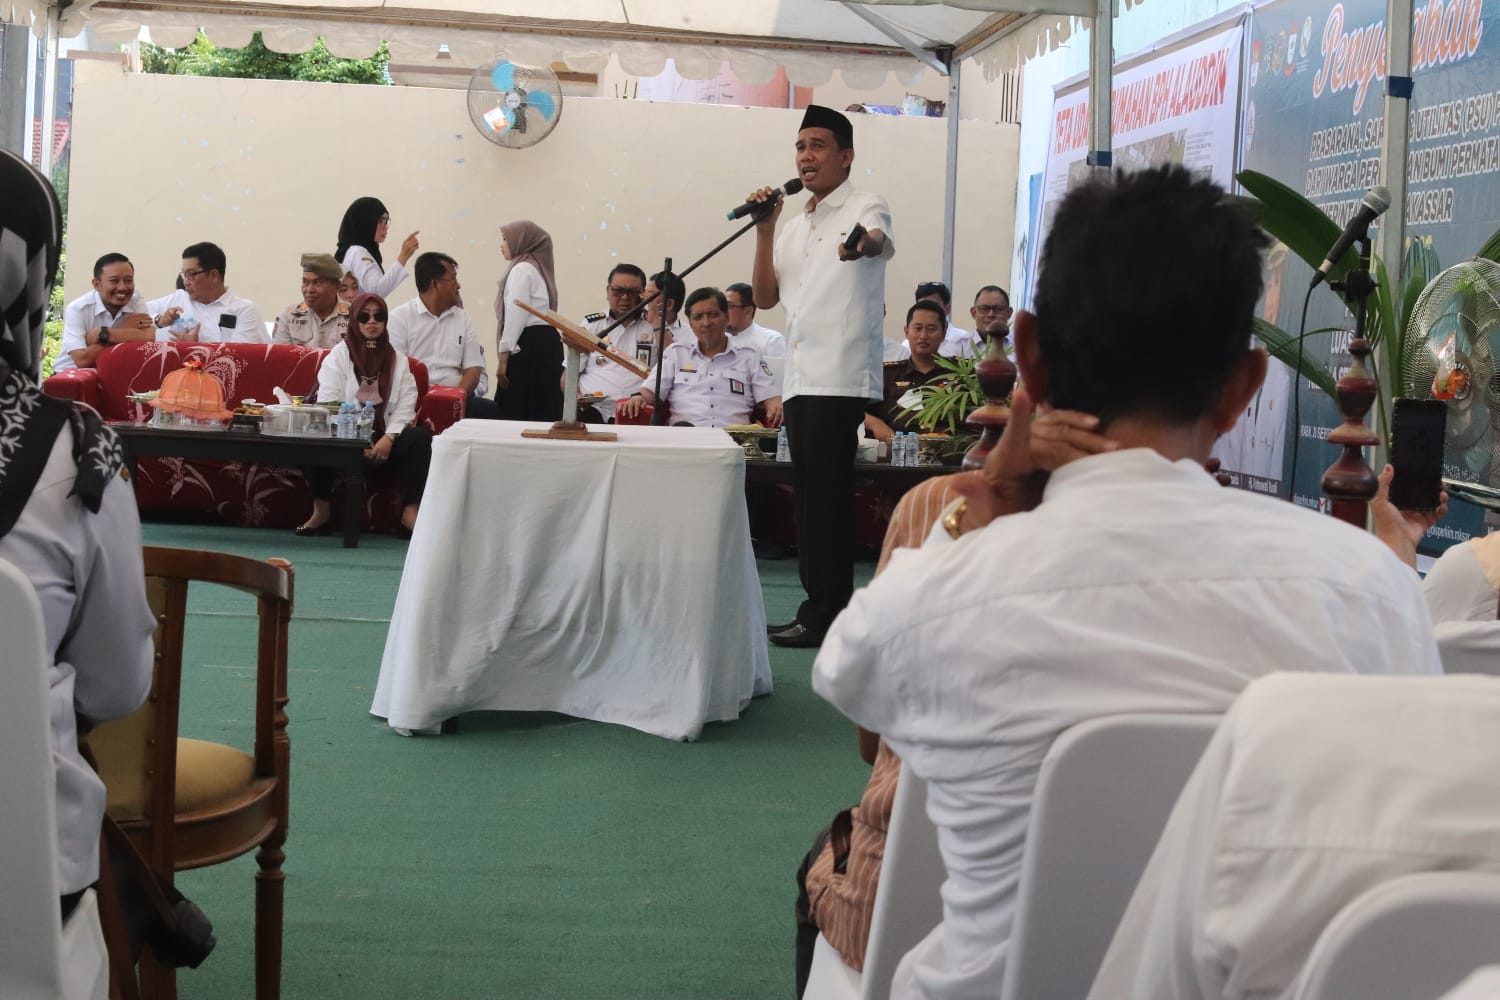 Ketua DPRD Rudianto Lallo Apresiasi Inisiatif Warga BPH Serahkan PSU ke Pemkot Makassar